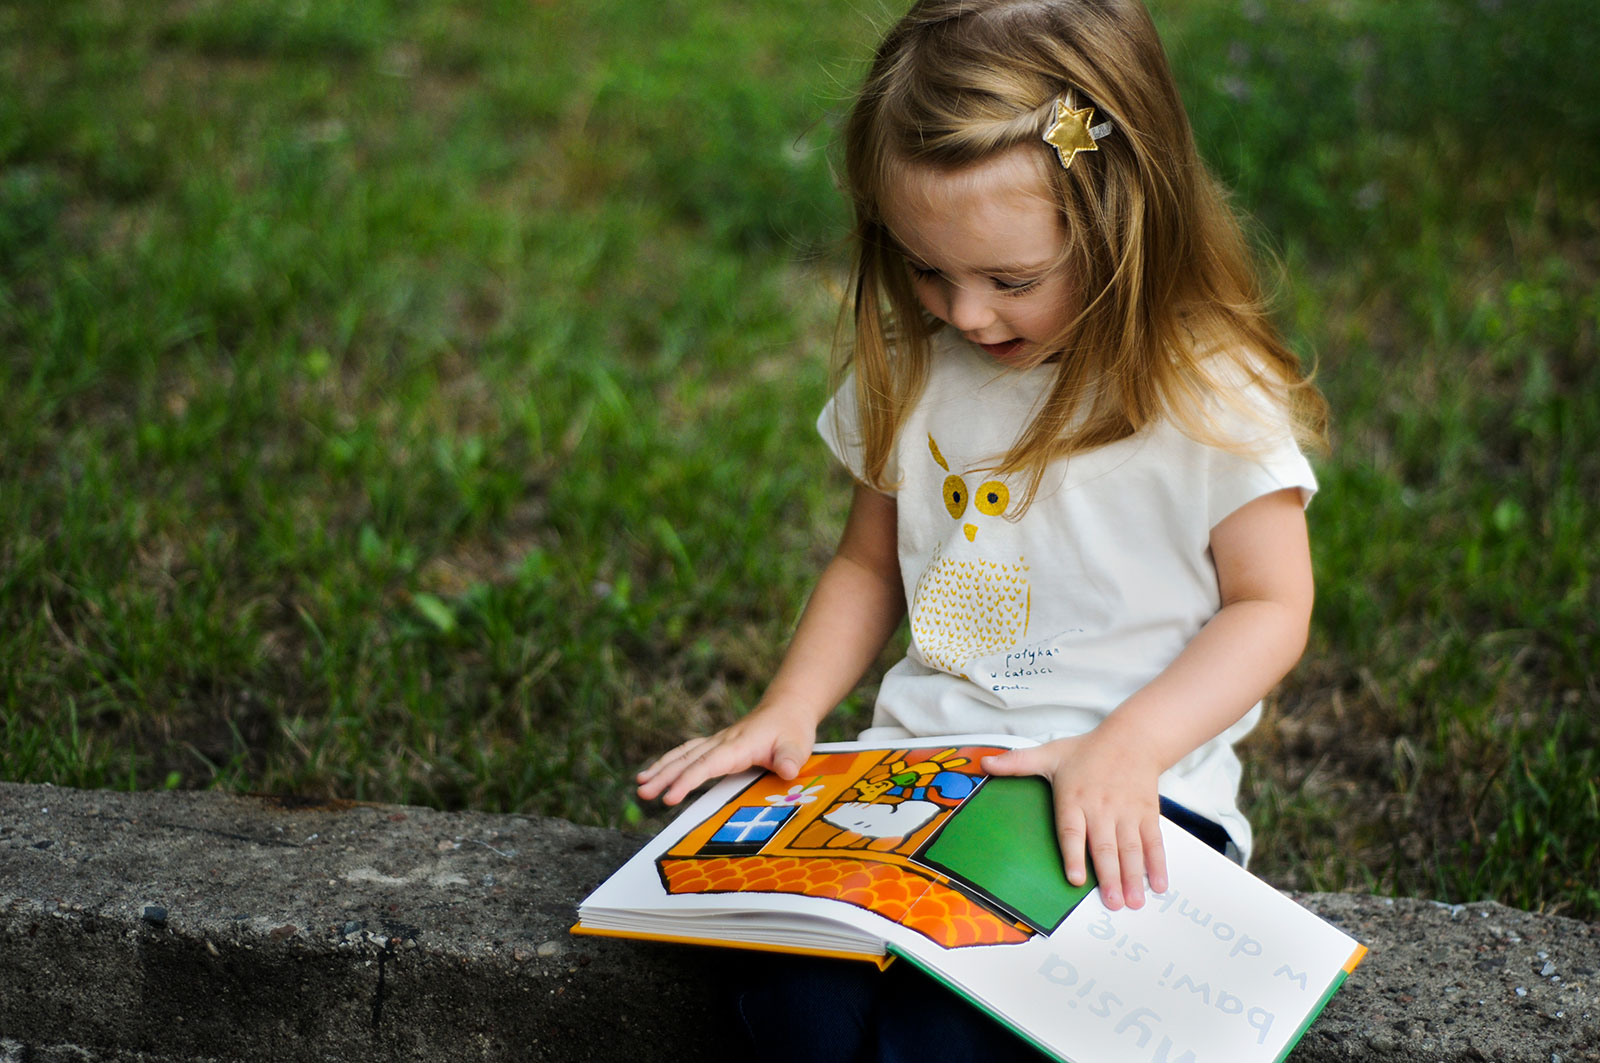 czytanie dzieciom jest ważne - mała dziewczynka z książką z obrazkami